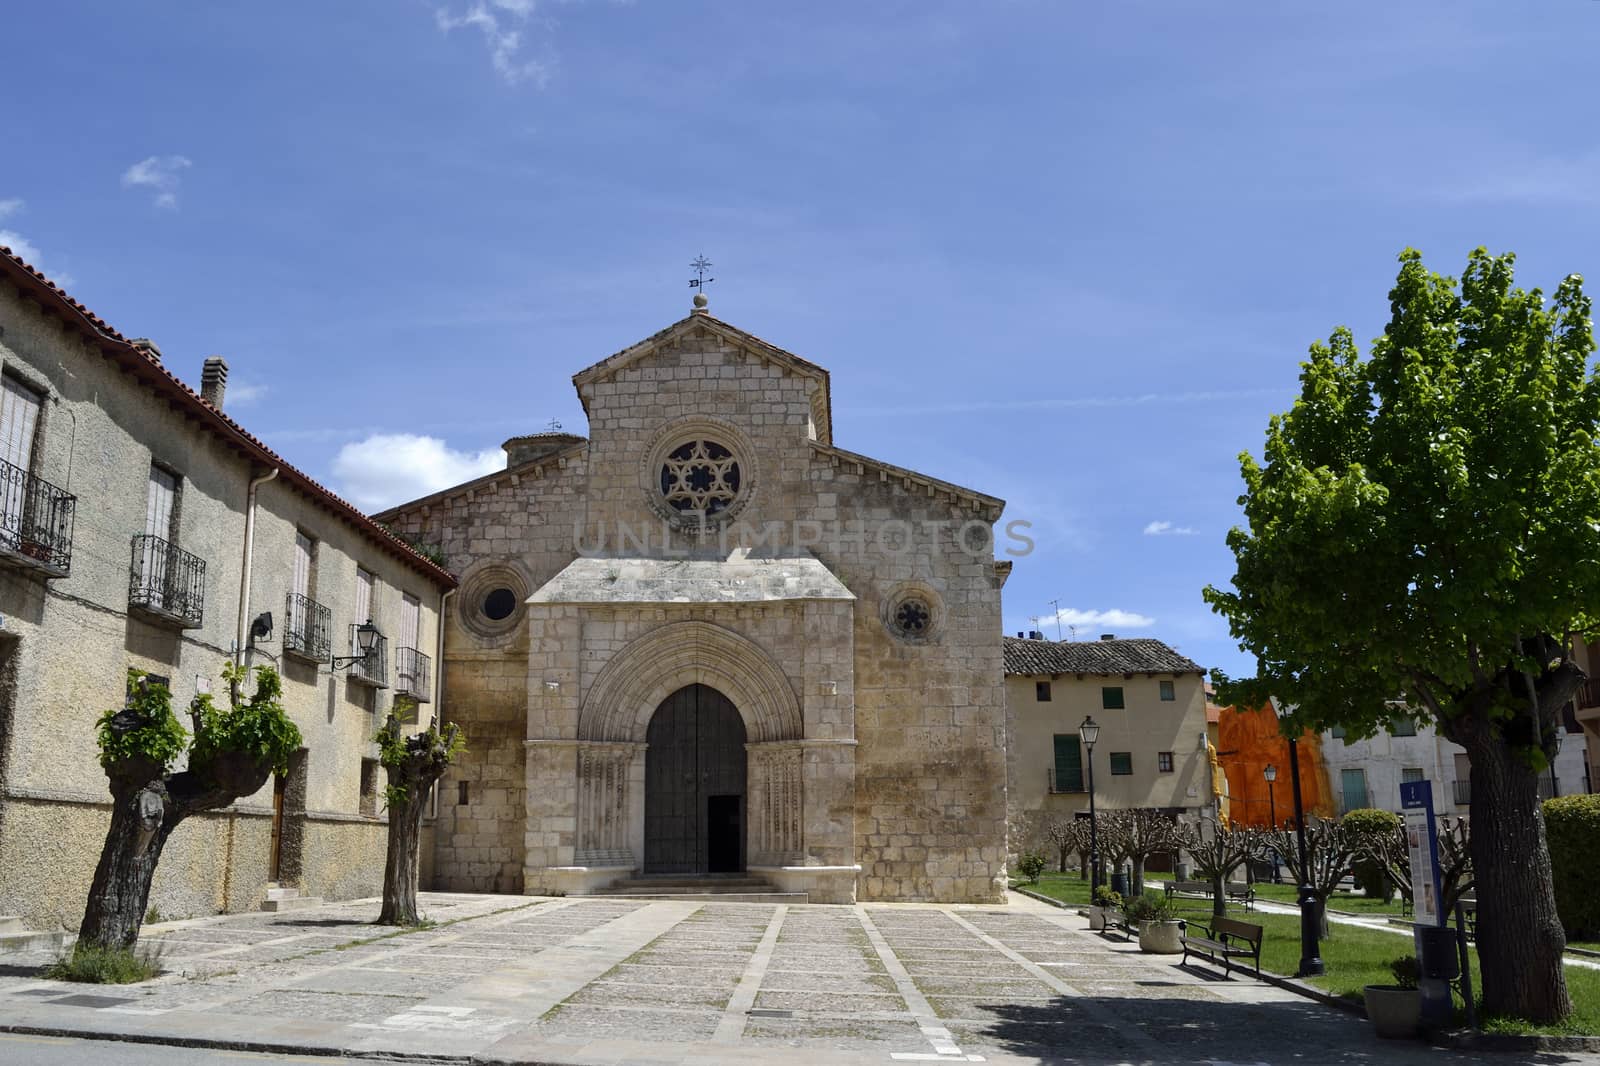 San Felipe church, Brihuega, Spain by ncuisinier